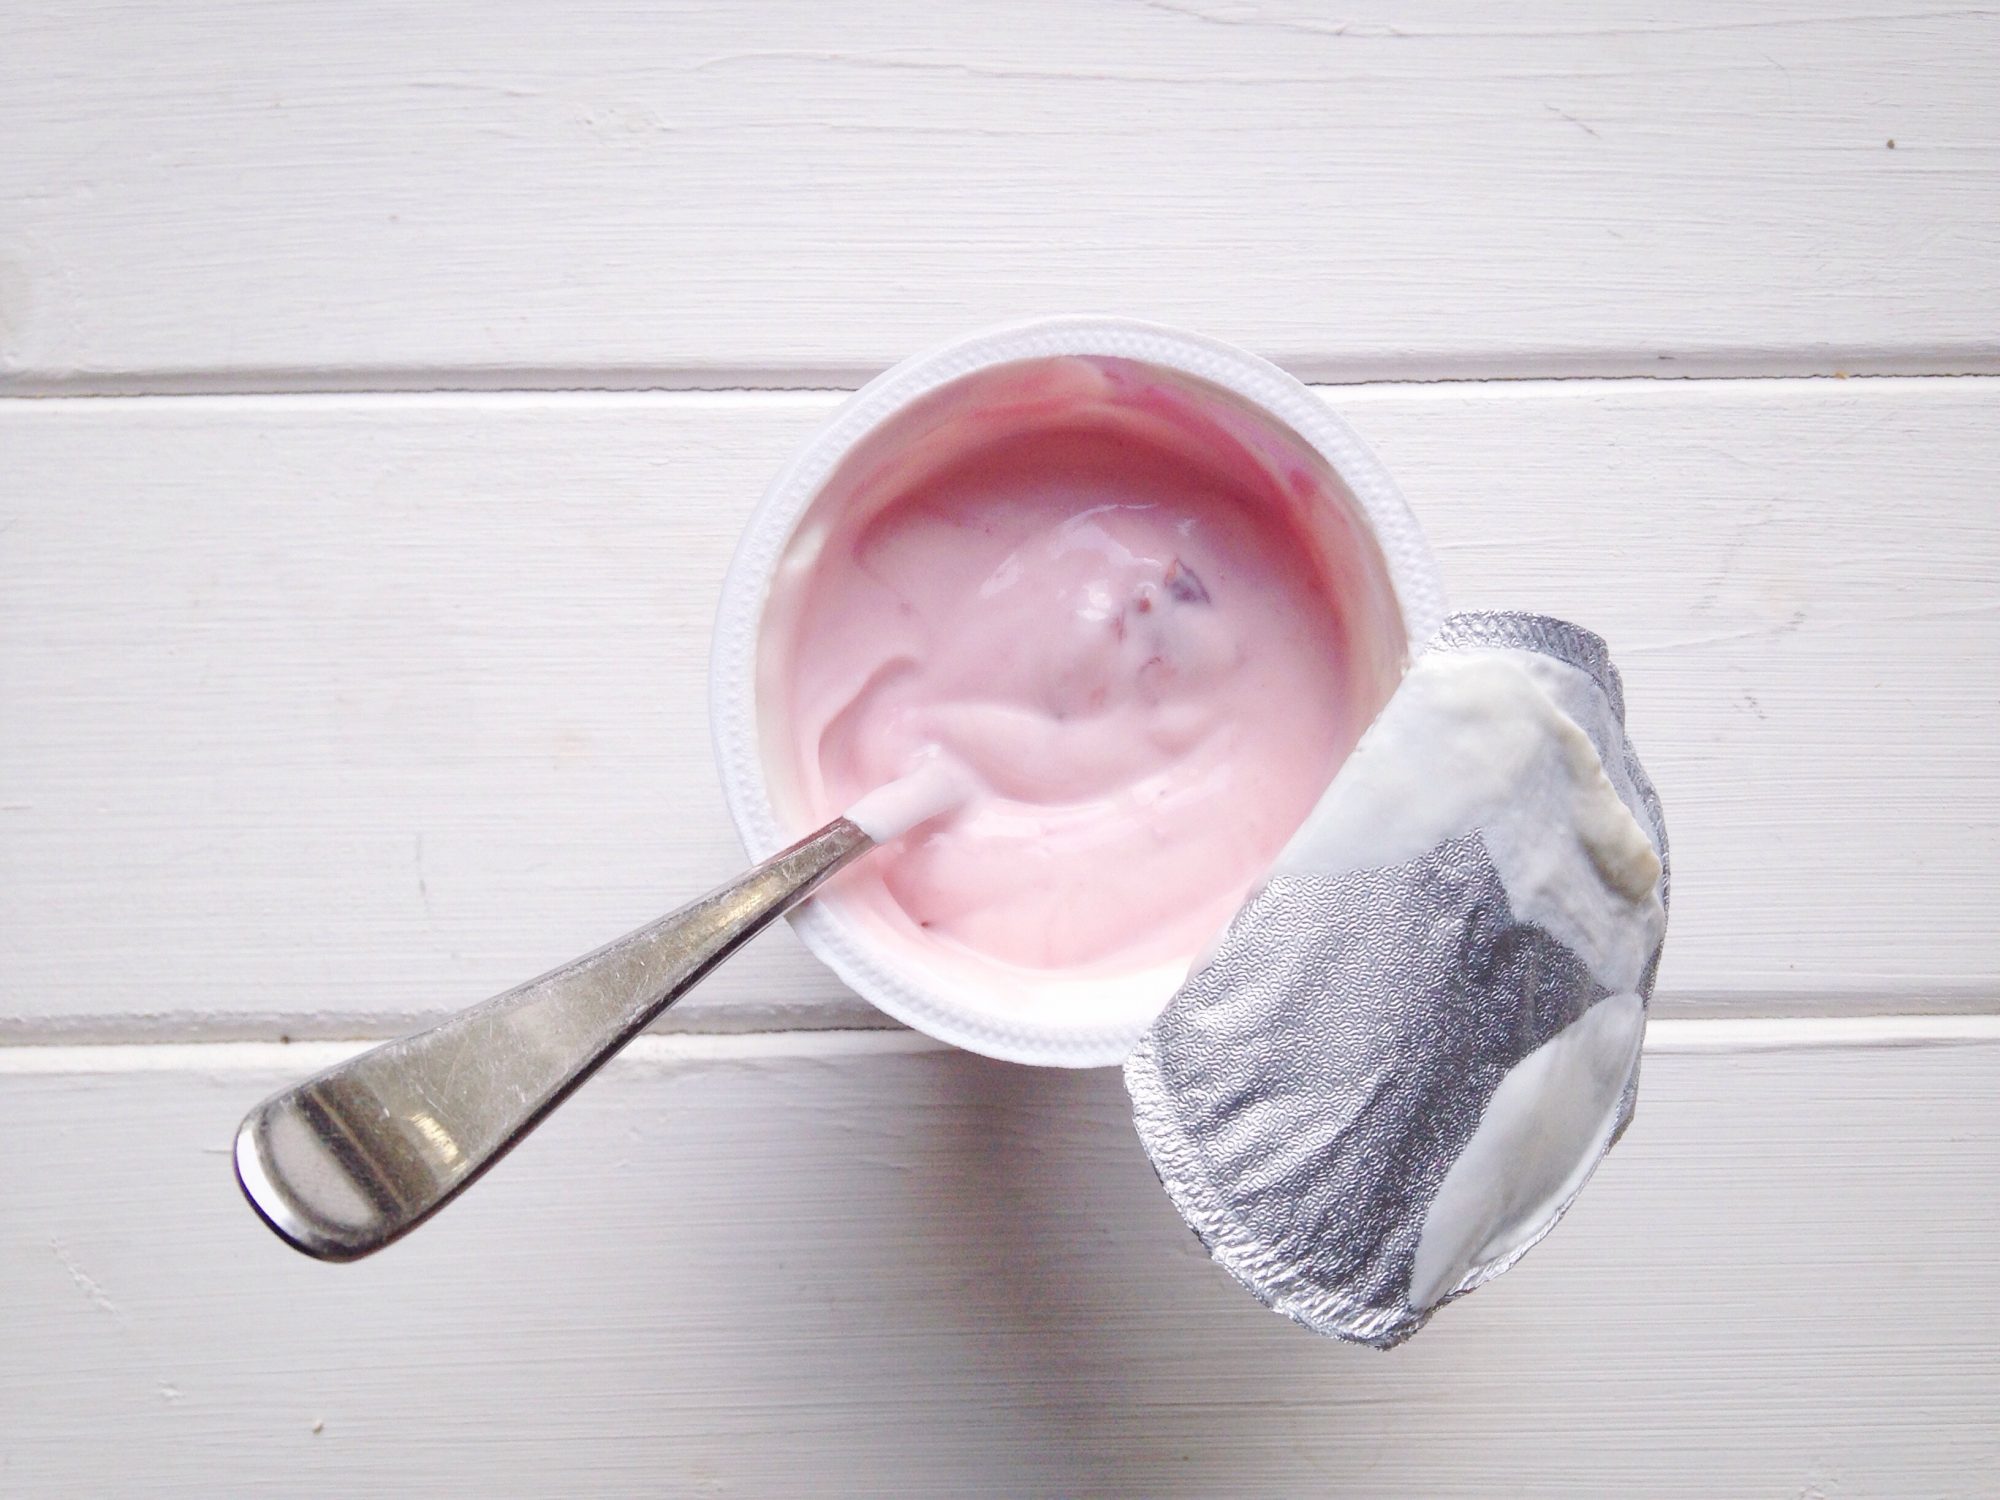 Yogurt in a Cup